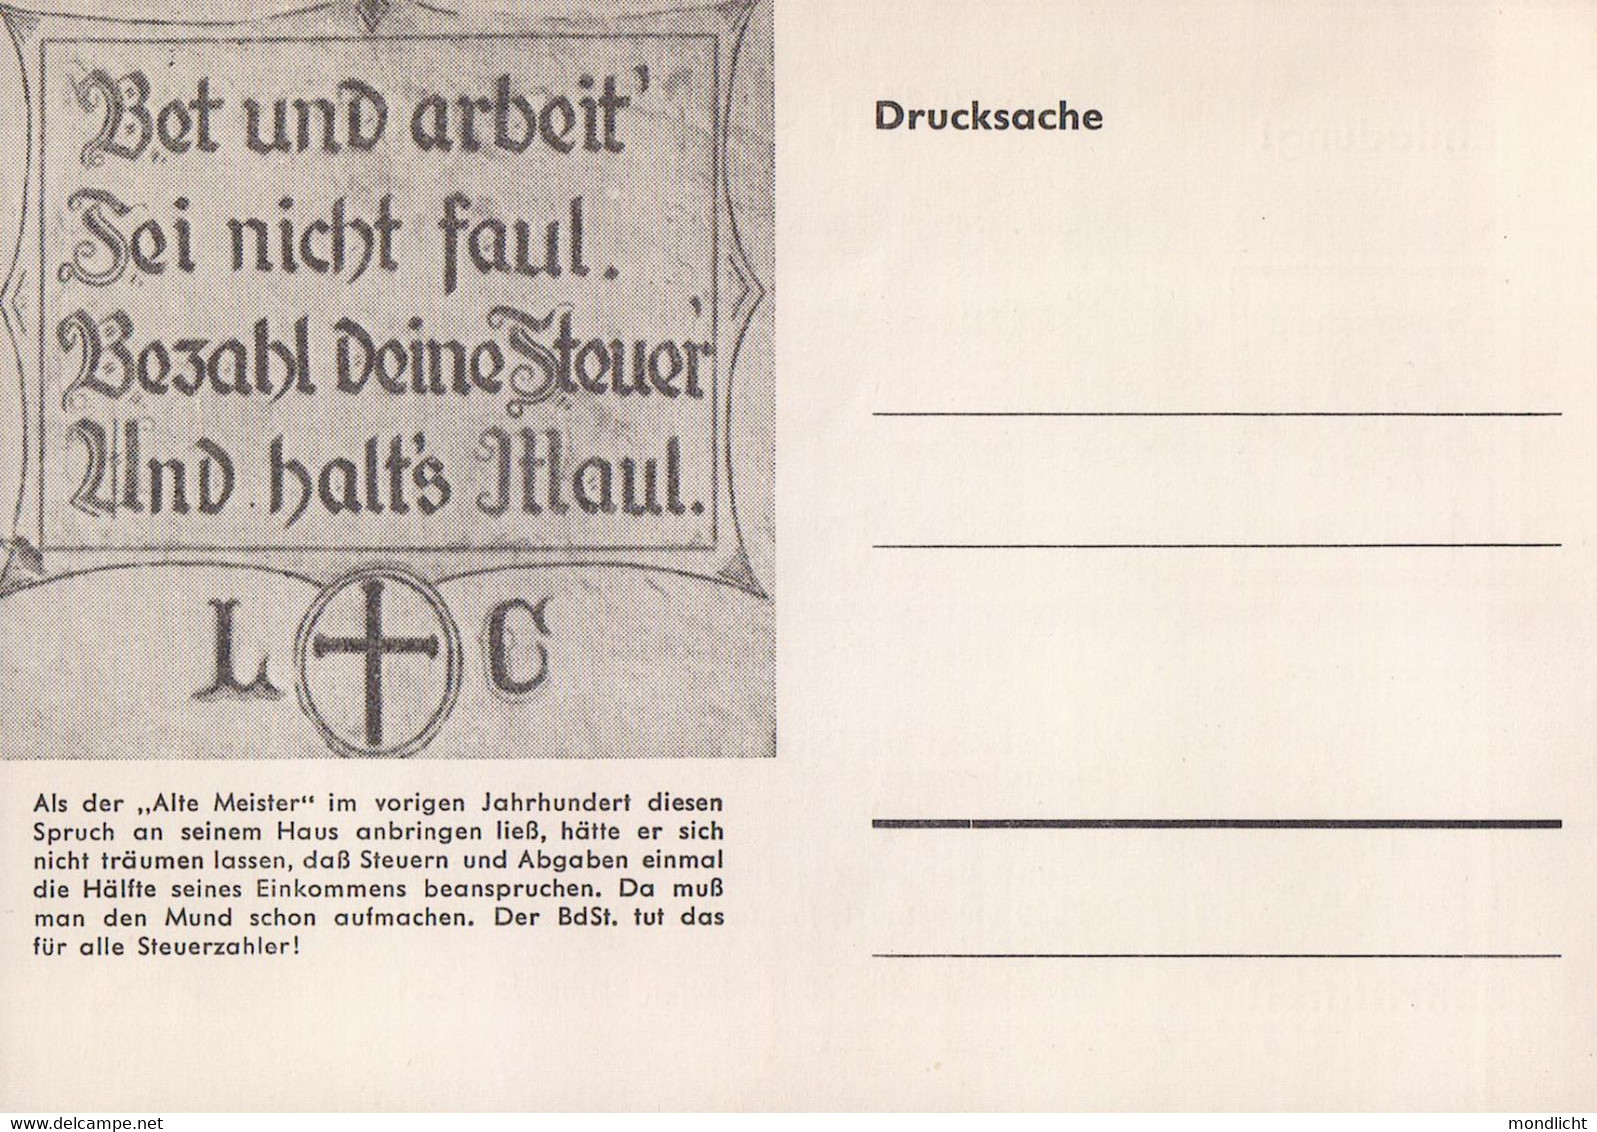 Forum Der Steuerzahler, Gasthaus Zum "Engel", 21. Sept. 1966. Max Wörne, Eisenwaren, Ihringen. Einladung, Drucksache. - Ihringen